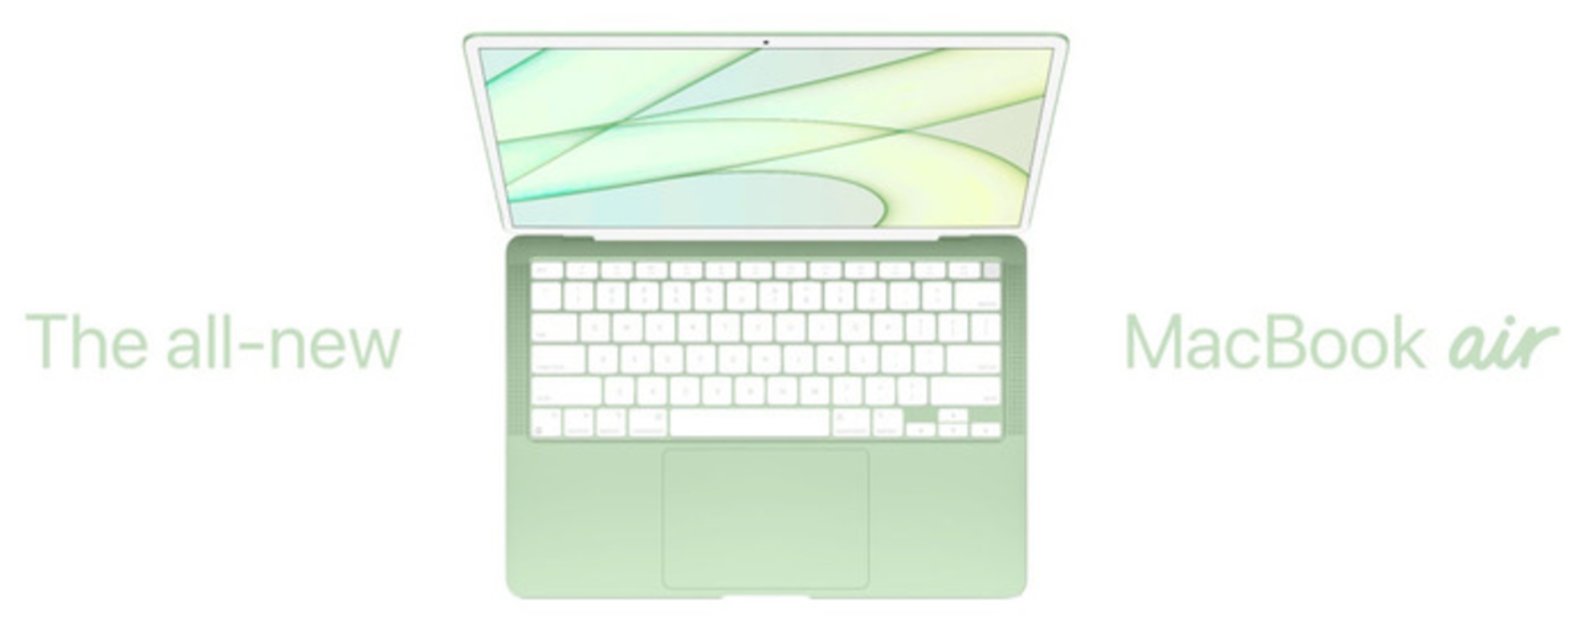 Nuevo diseño del MacBook Air